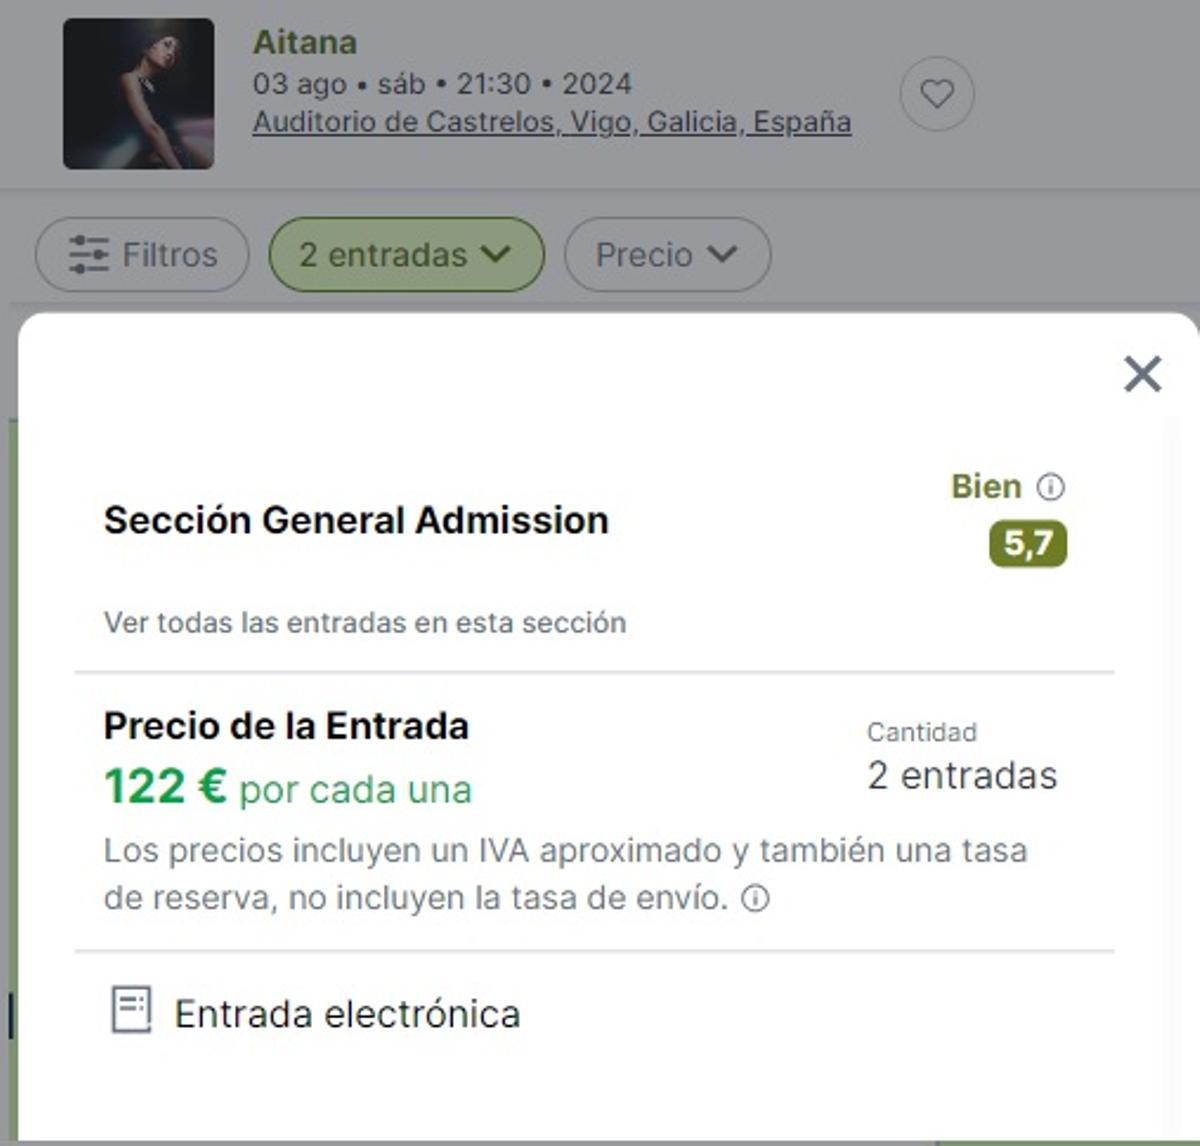 Páginas como Viagogo ofrecen entradas para el concierto de Aitana en Vigo por 122 euros.